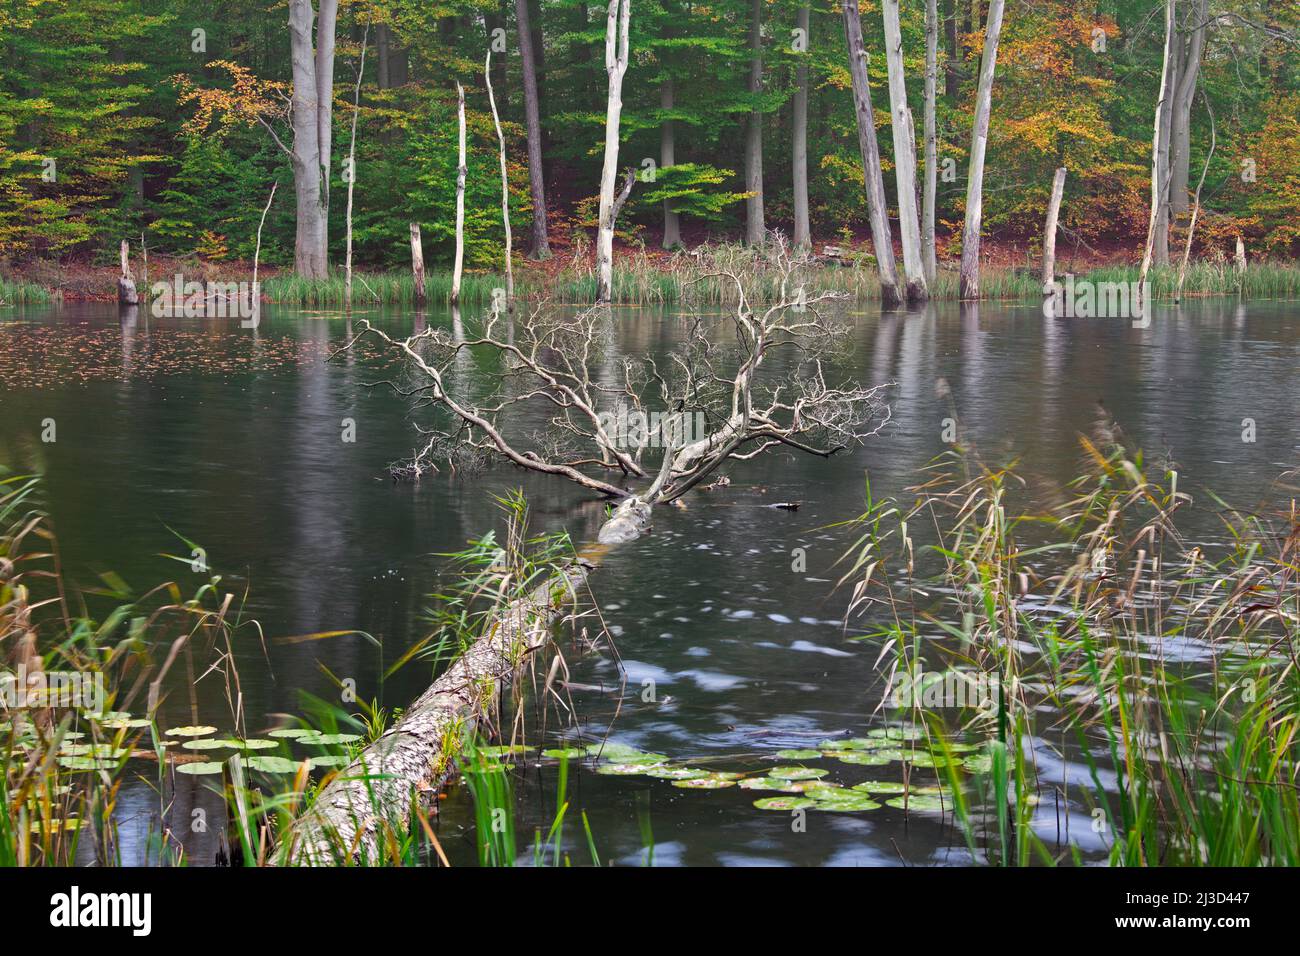 Schweingartensee in autunno, lago nelle colline di Serrahn / Serrahner Berge, Mecklenburgische Seenplatte distretto di Mecklenburg-Vorpommern, Germania Foto Stock